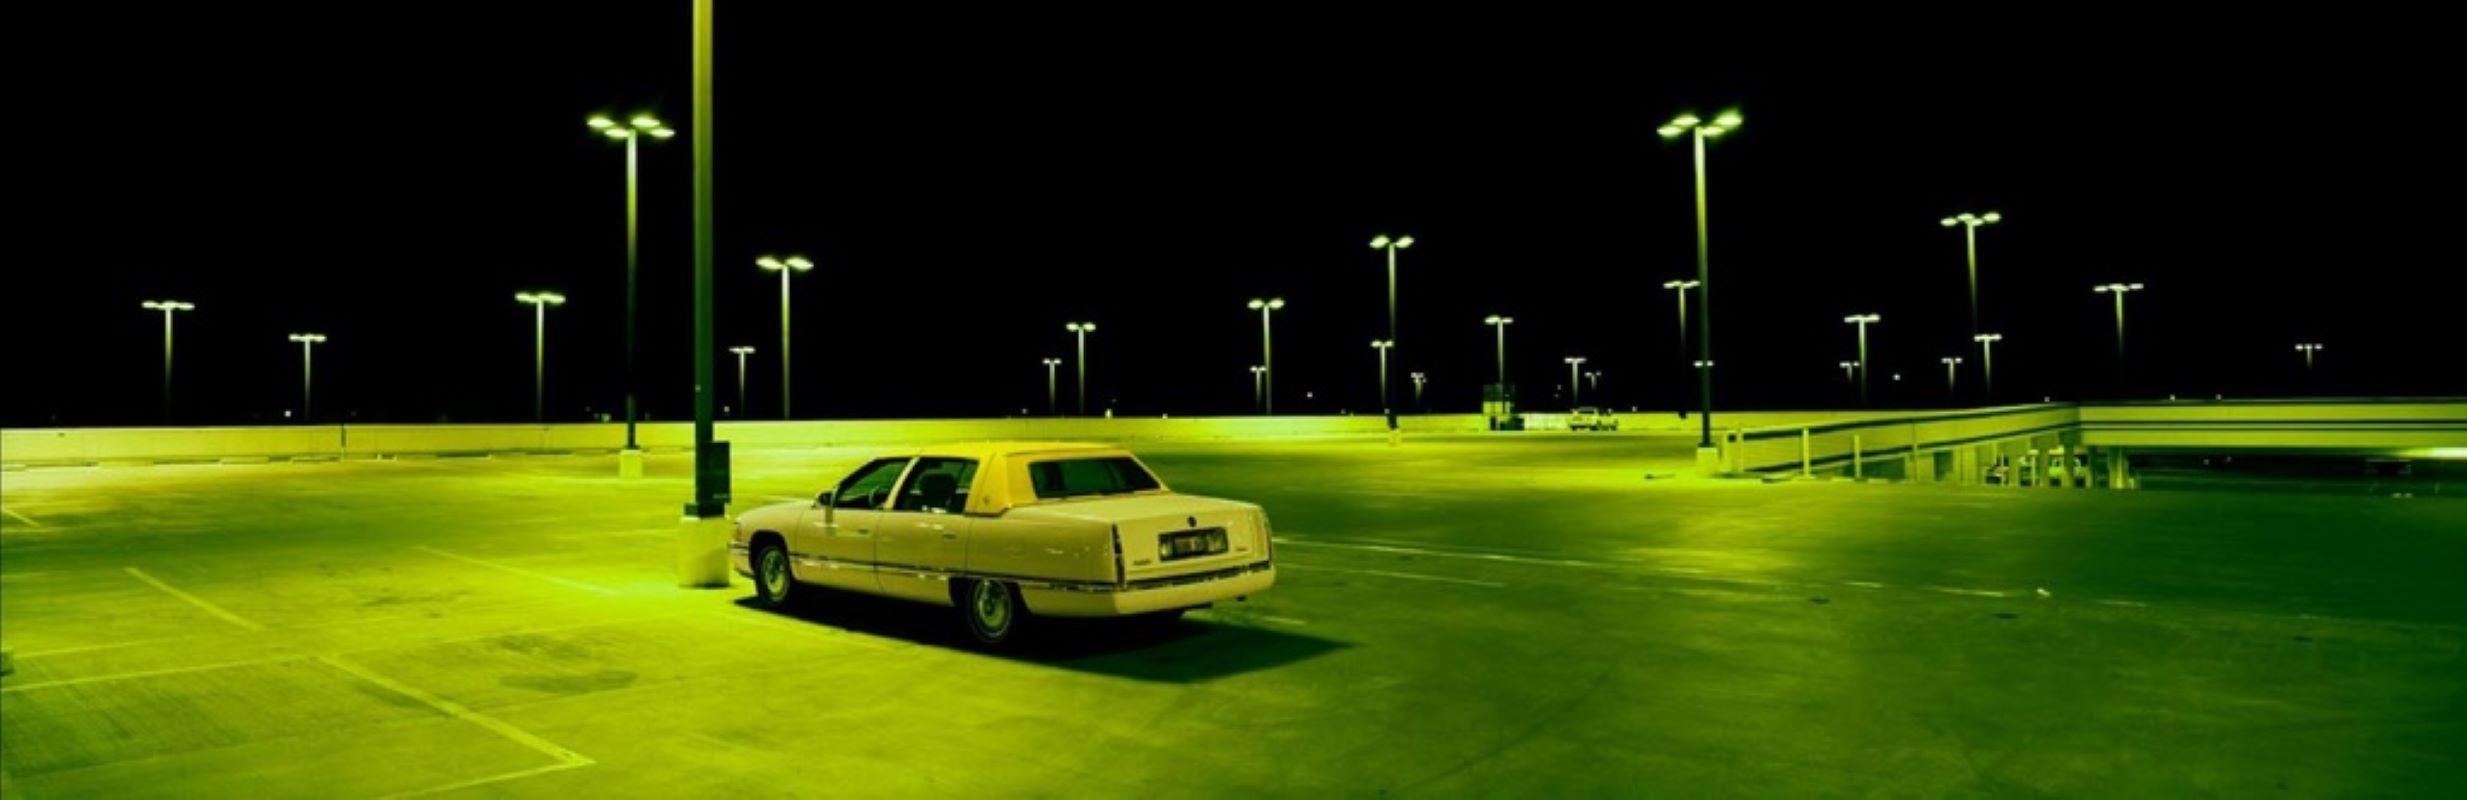 Cadillac in Parking Lot, Las Vegas - das Auto in der Dunkelheit mit grünen Lichtern